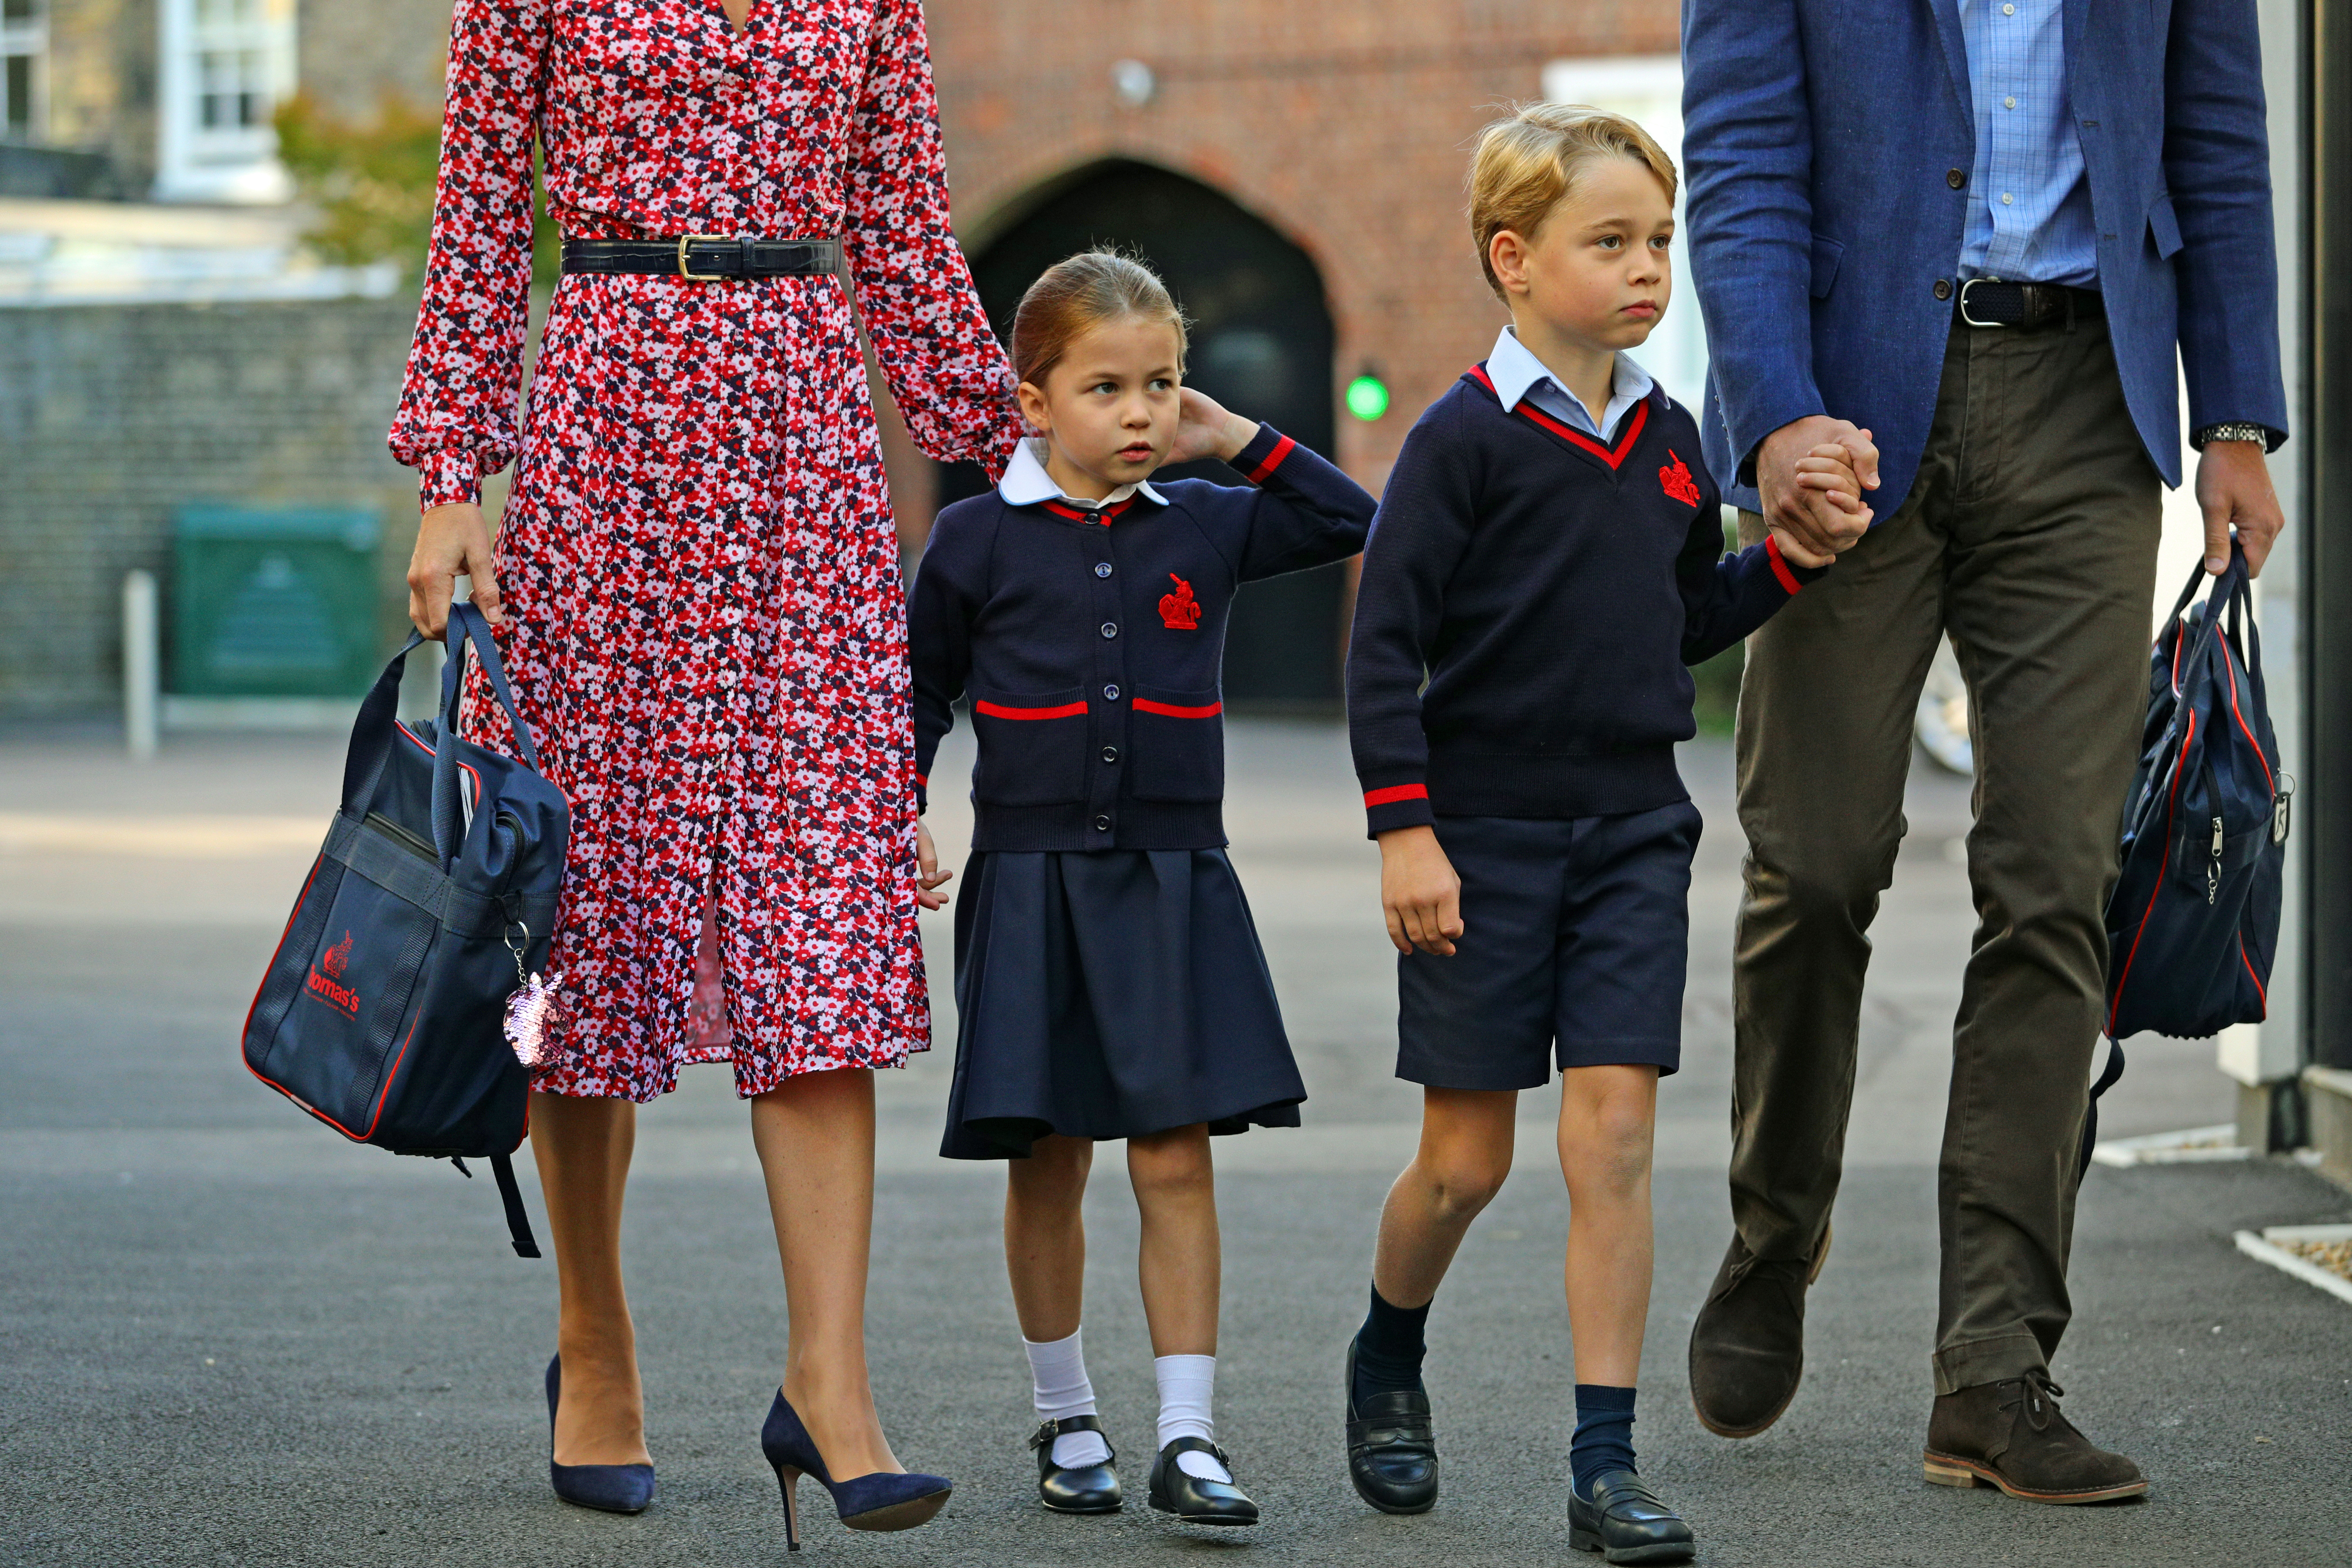 Πρωτάκι η Πριγκίπισσα Σάρλοτ έκανε τα δικά της στην πρώτη μέρα στο σχολείο! [pics]